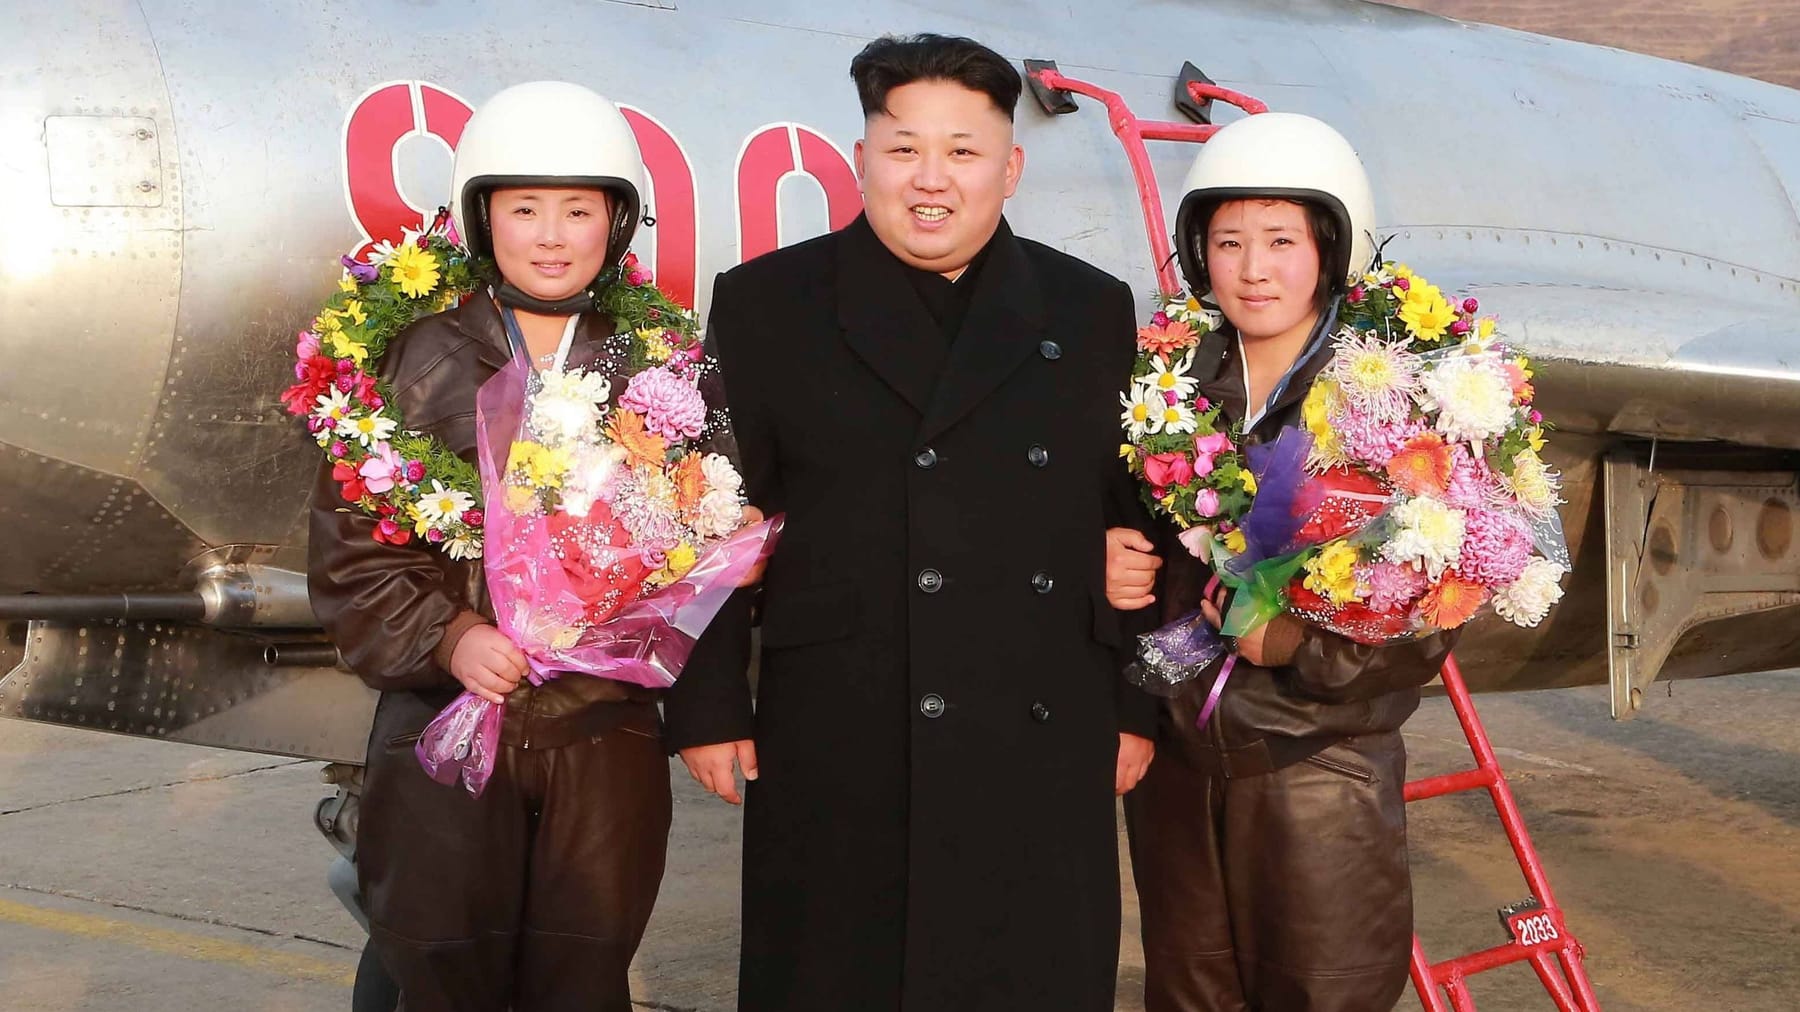 Nordkorea: Kim Jong-un soll angeblich Harem aus Schülerinnen rekrutieren...